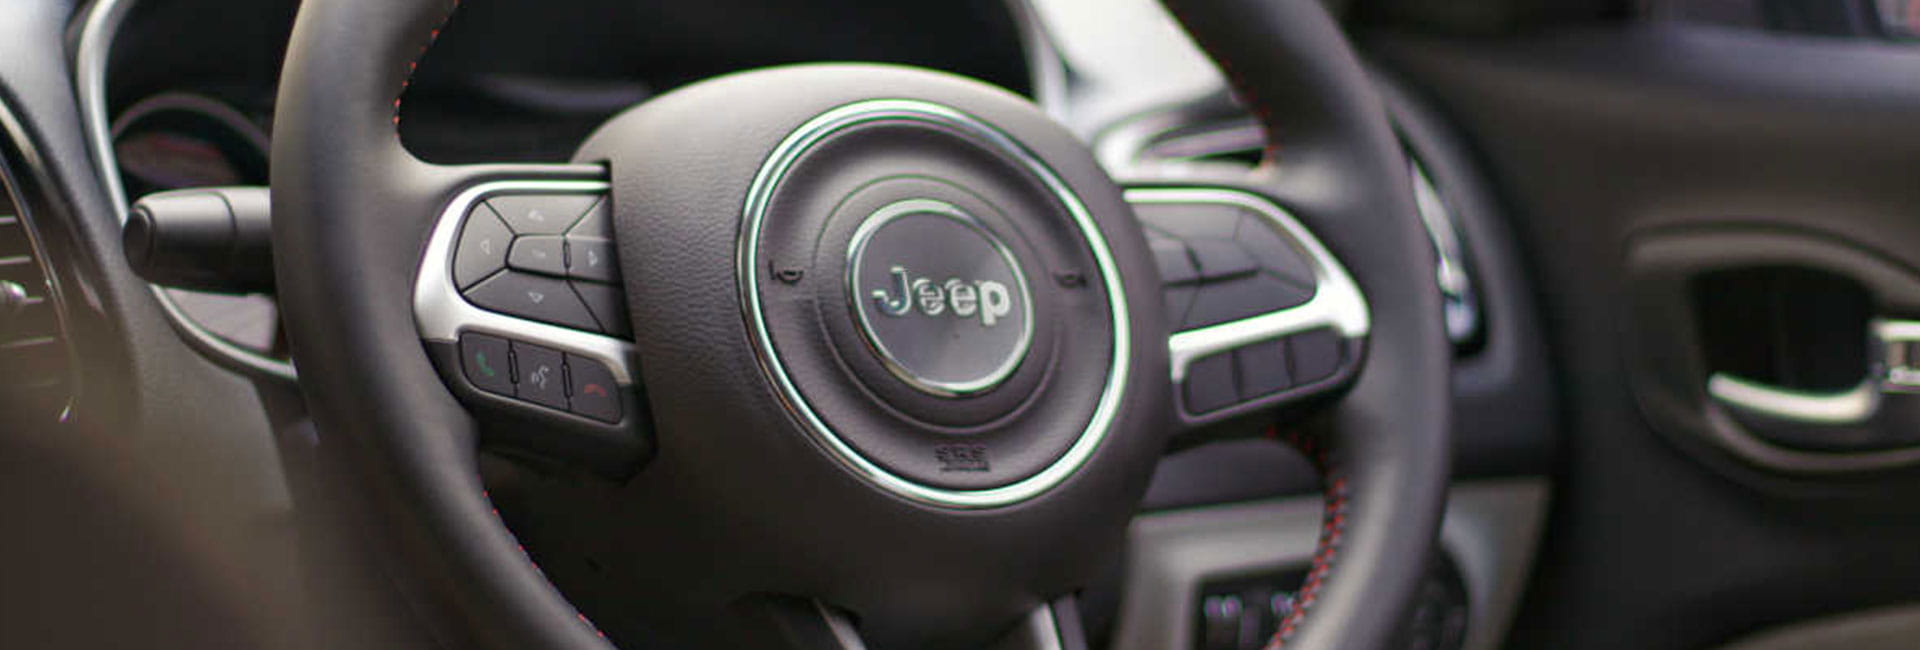 Jeep Avenger: B-suv elettrico e compatto